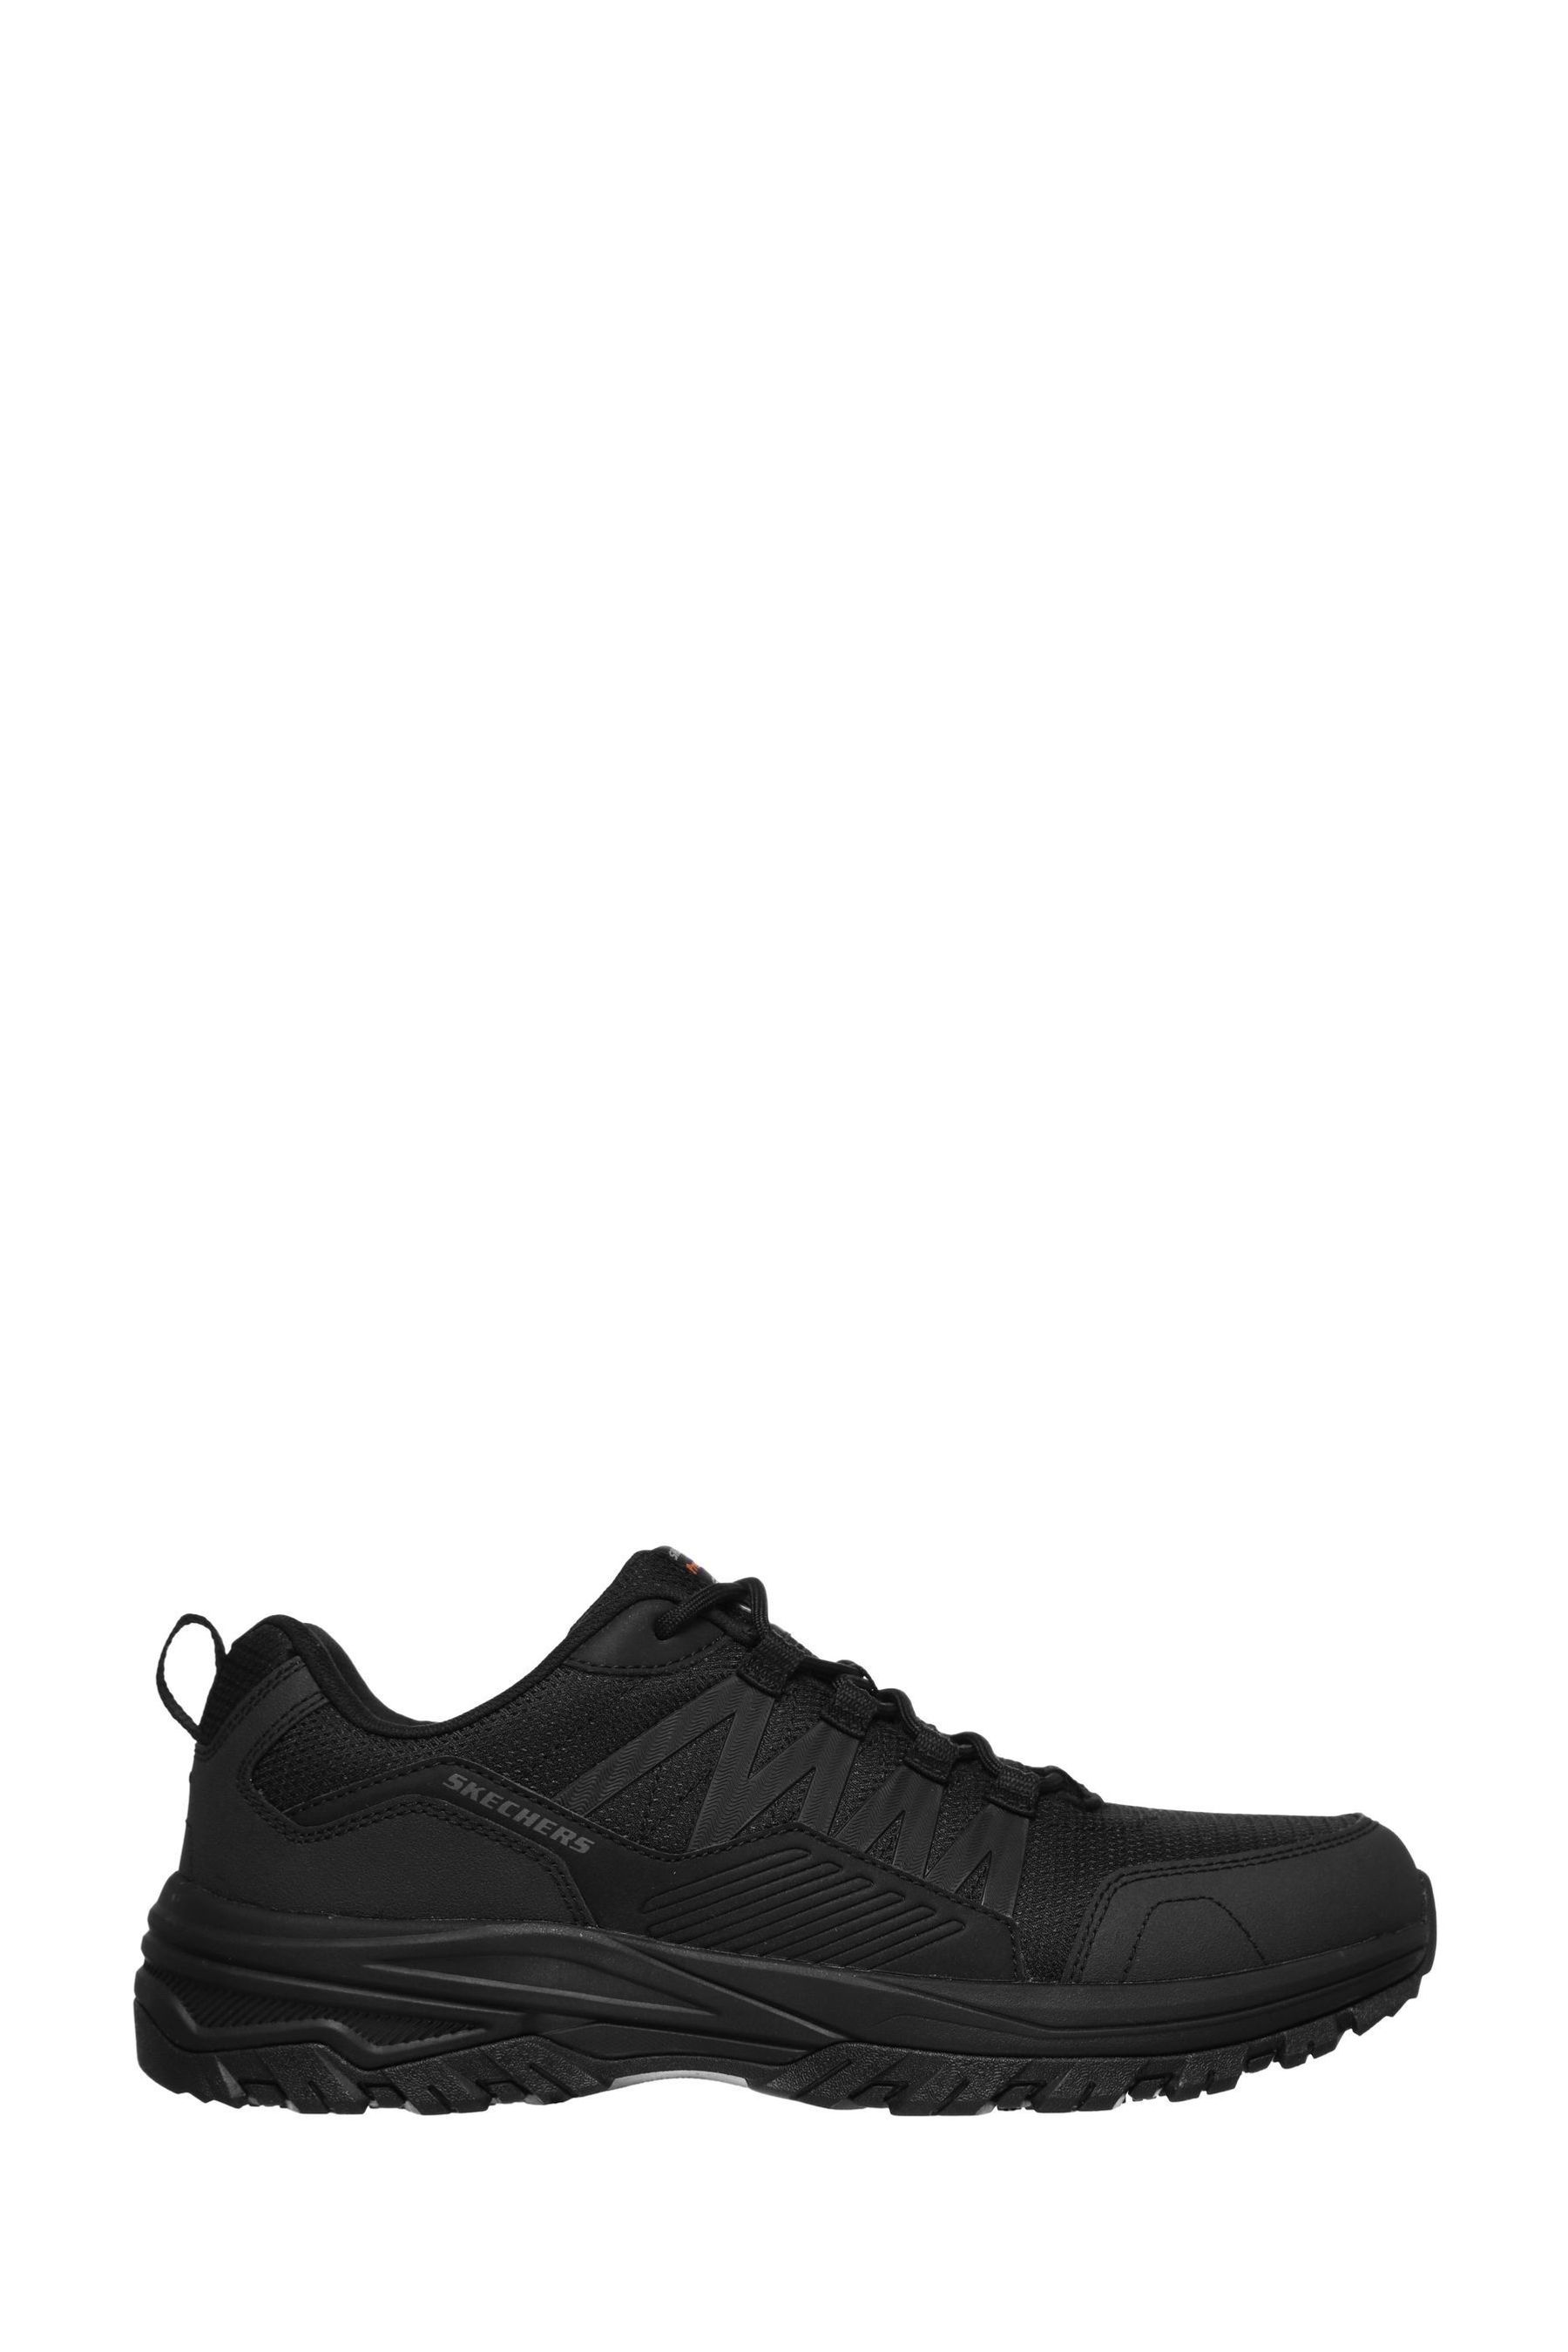 Fannter мужская спортивная обувь Skechers, черный